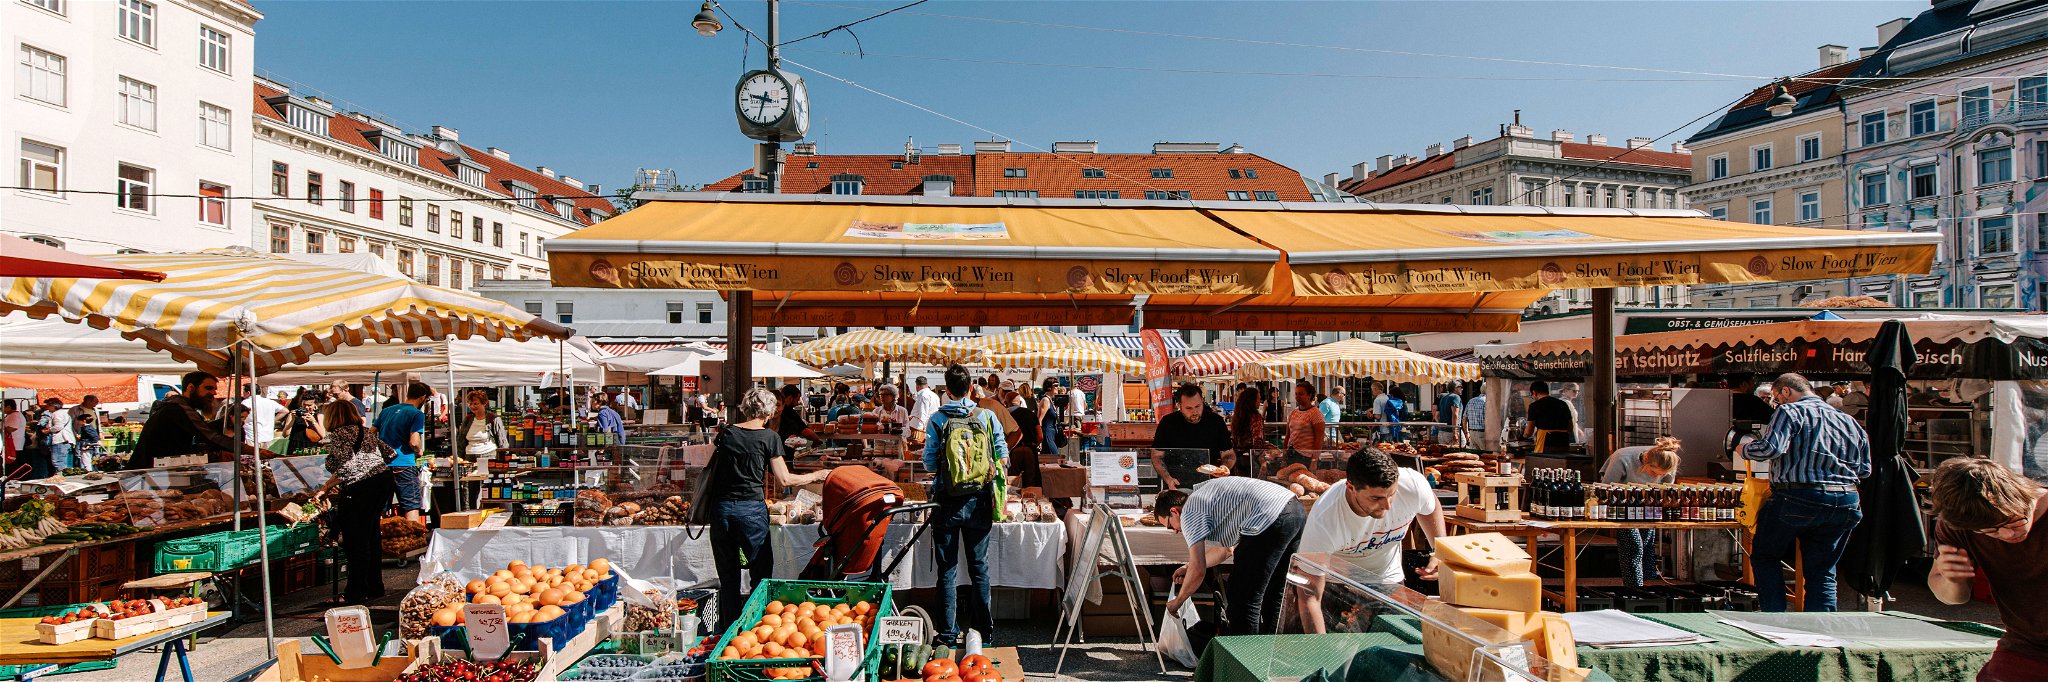 Der Karmelitermarkt hat sich zum hippen Treffpunkt für Jung und Alt, für klassisches Marktpublikum und junge Szenemenschen entwickelt – nicht zuletzt auch aufgrund der hochentwickelten Gastro-Szene hier.